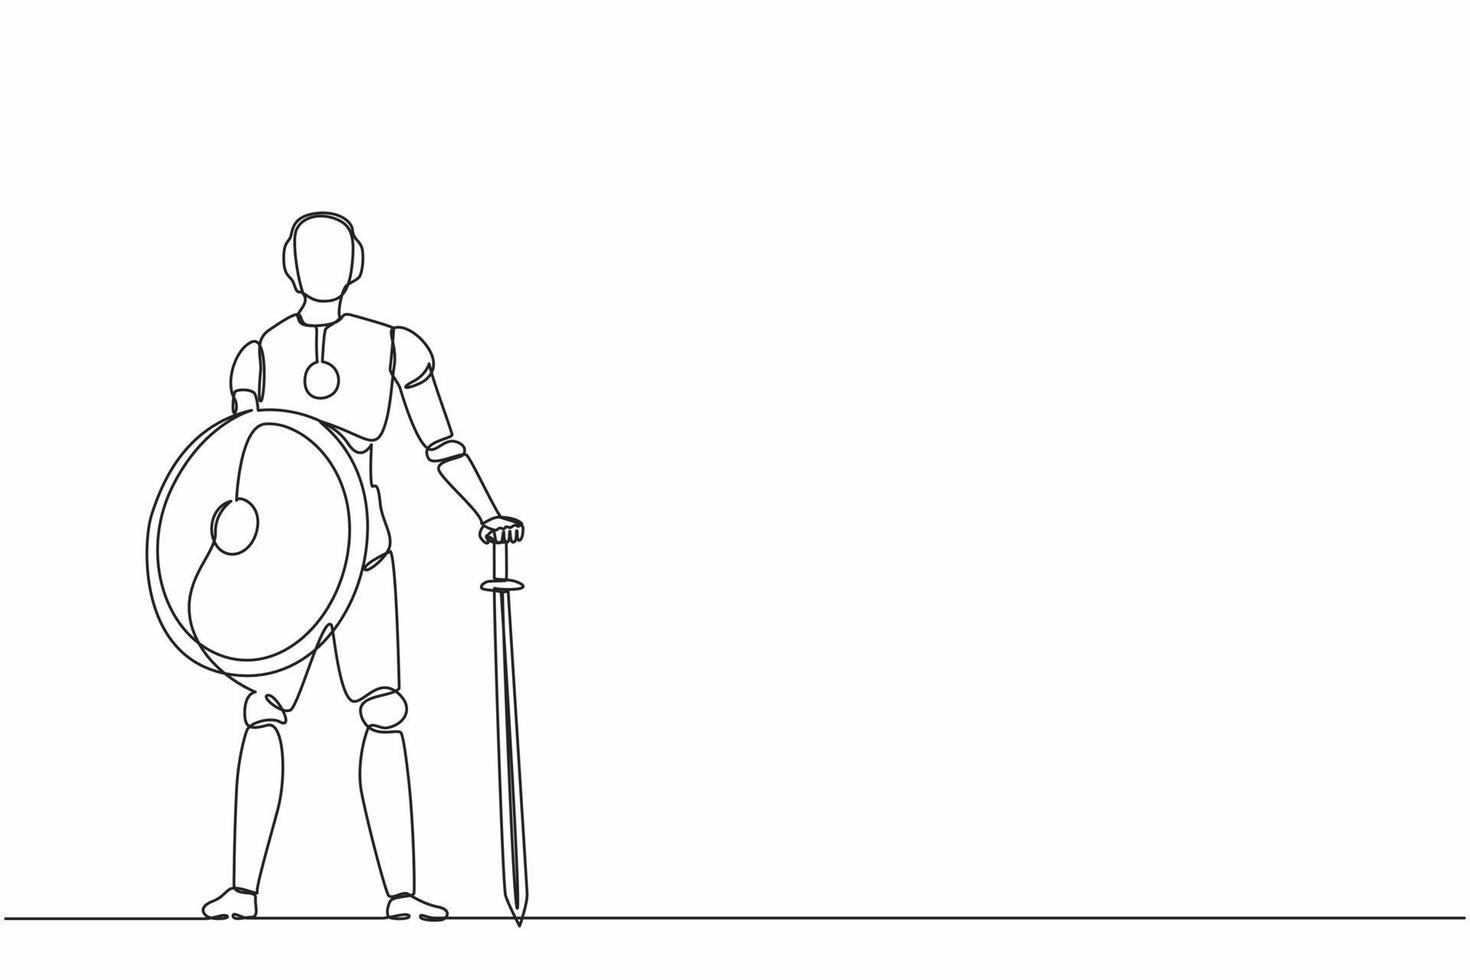 los robots de dibujo de una línea continua sostienen una gran espada y un escudo. organismo cibernético robot humanoide. futuro concepto de desarrollo de robótica. ilustración gráfica de vector de diseño de dibujo de una sola línea